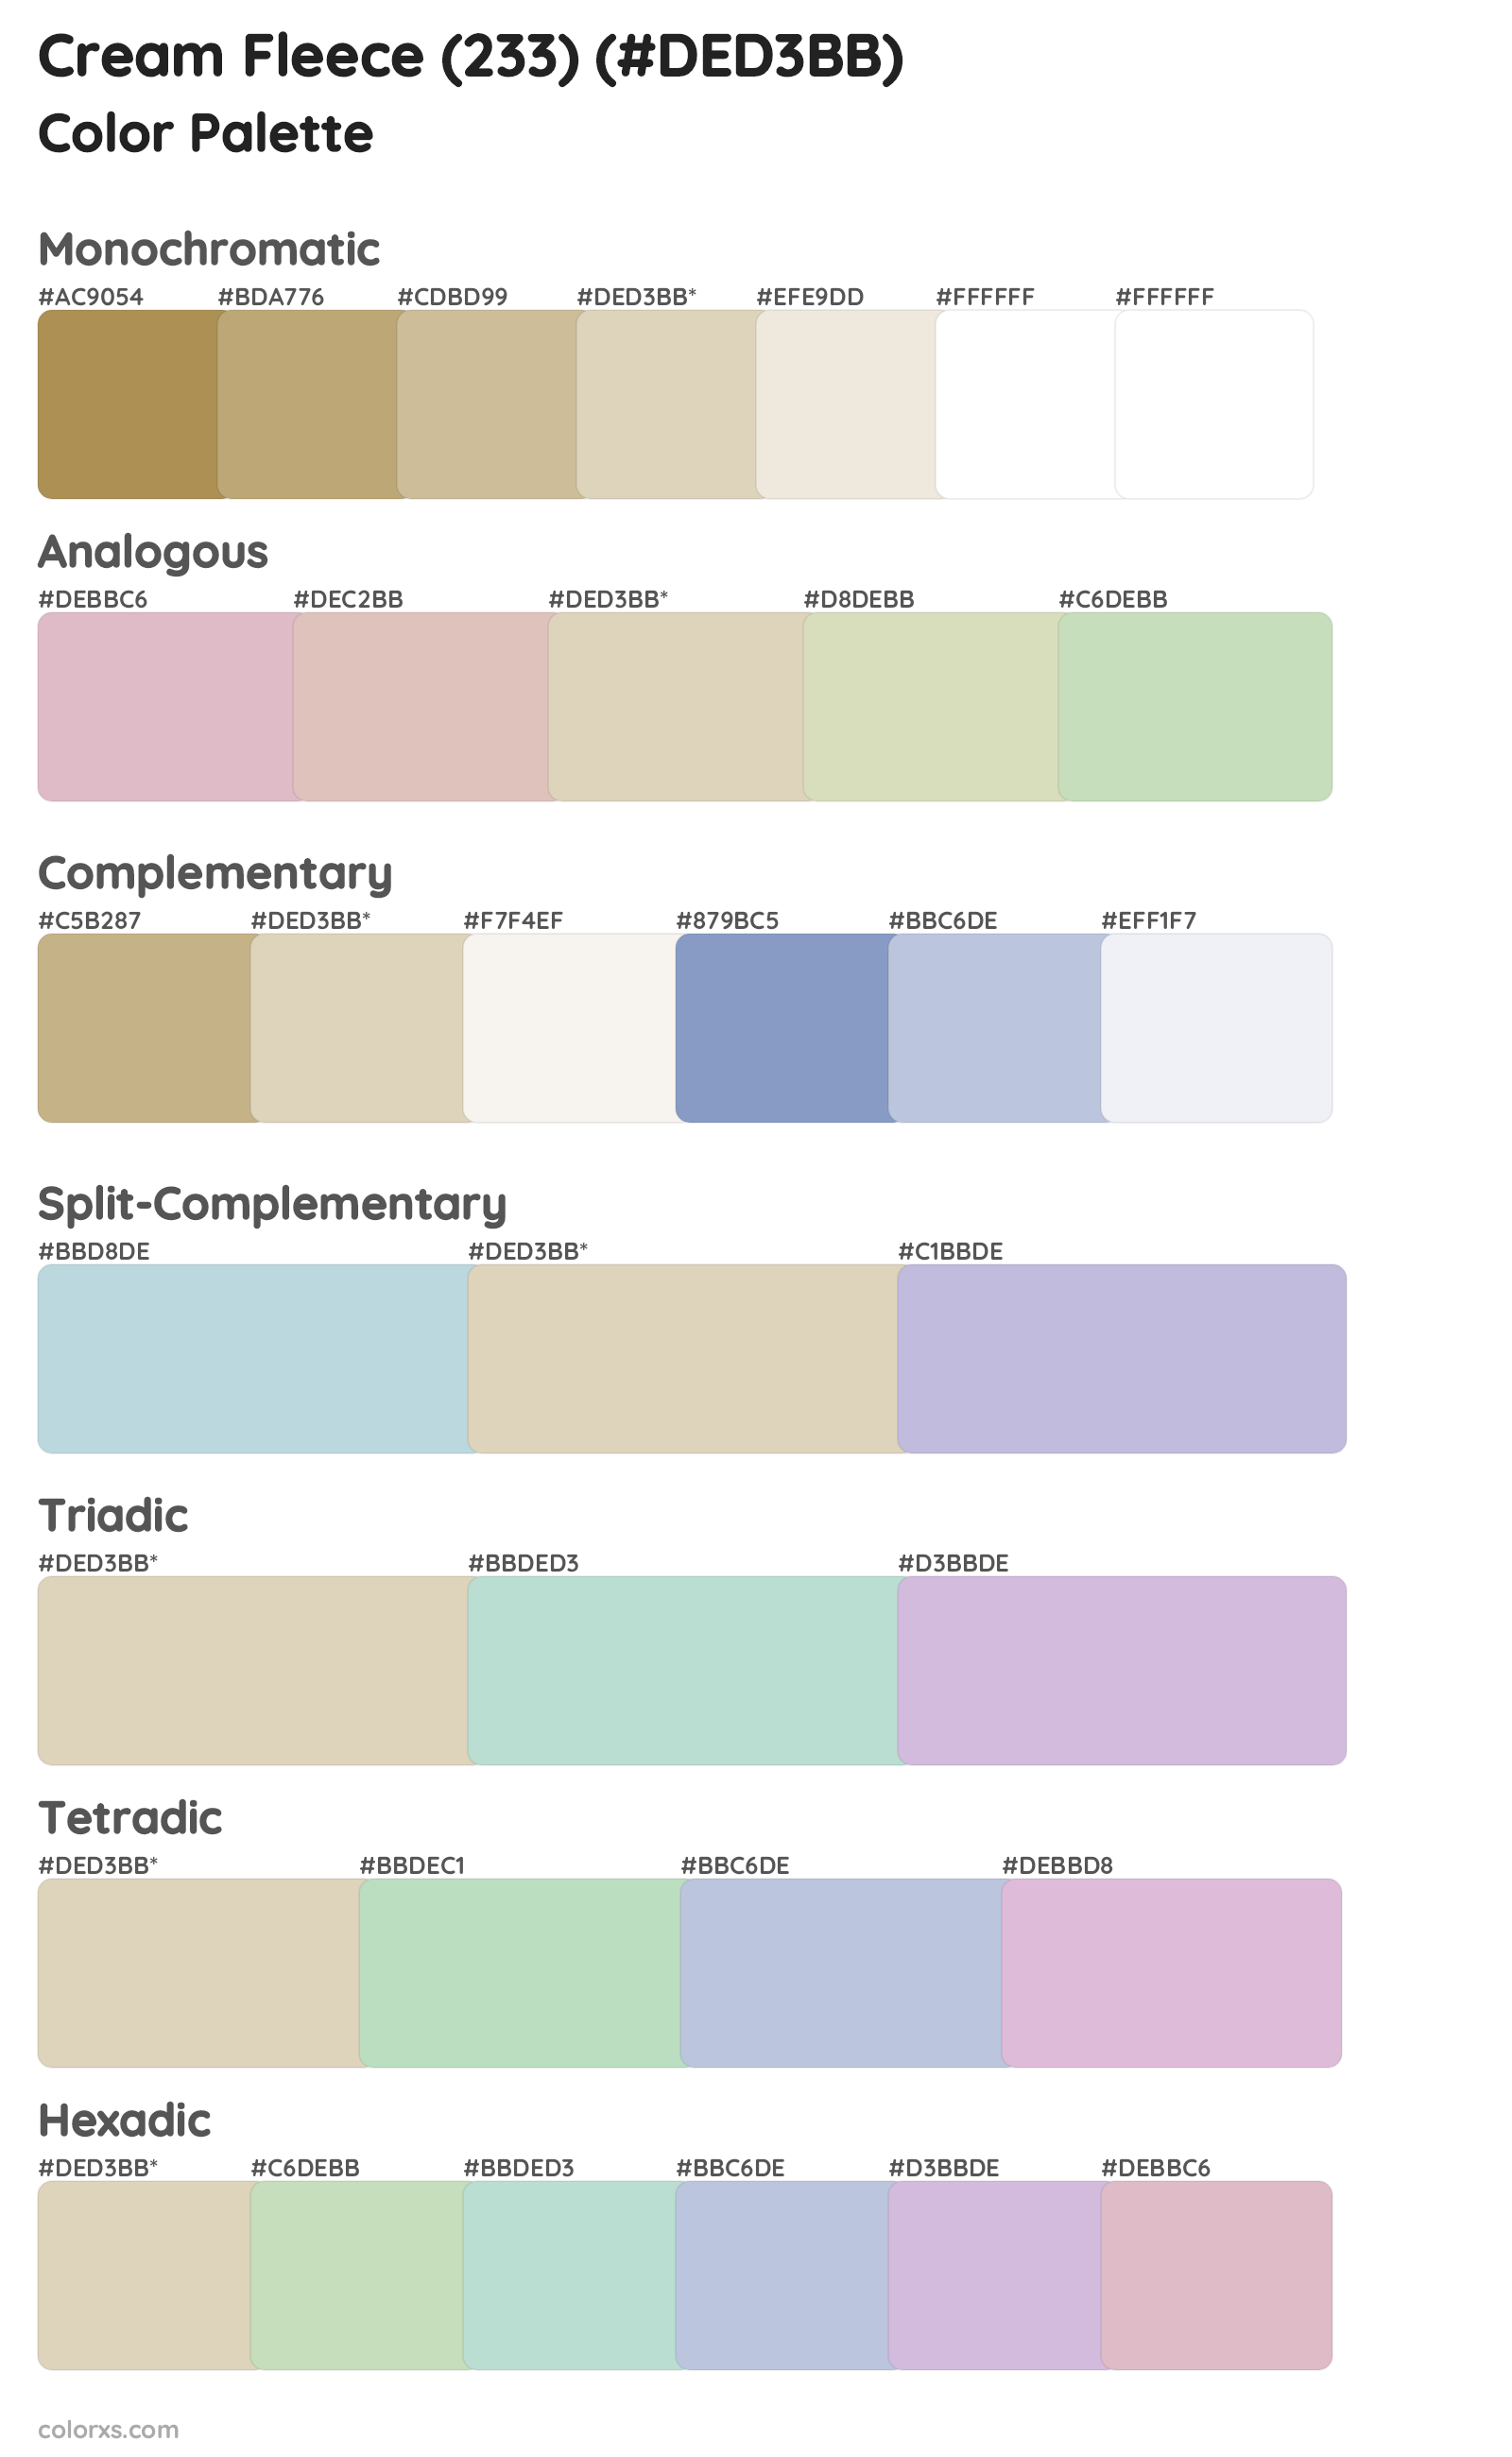 Cream Fleece (233) Color Scheme Palettes